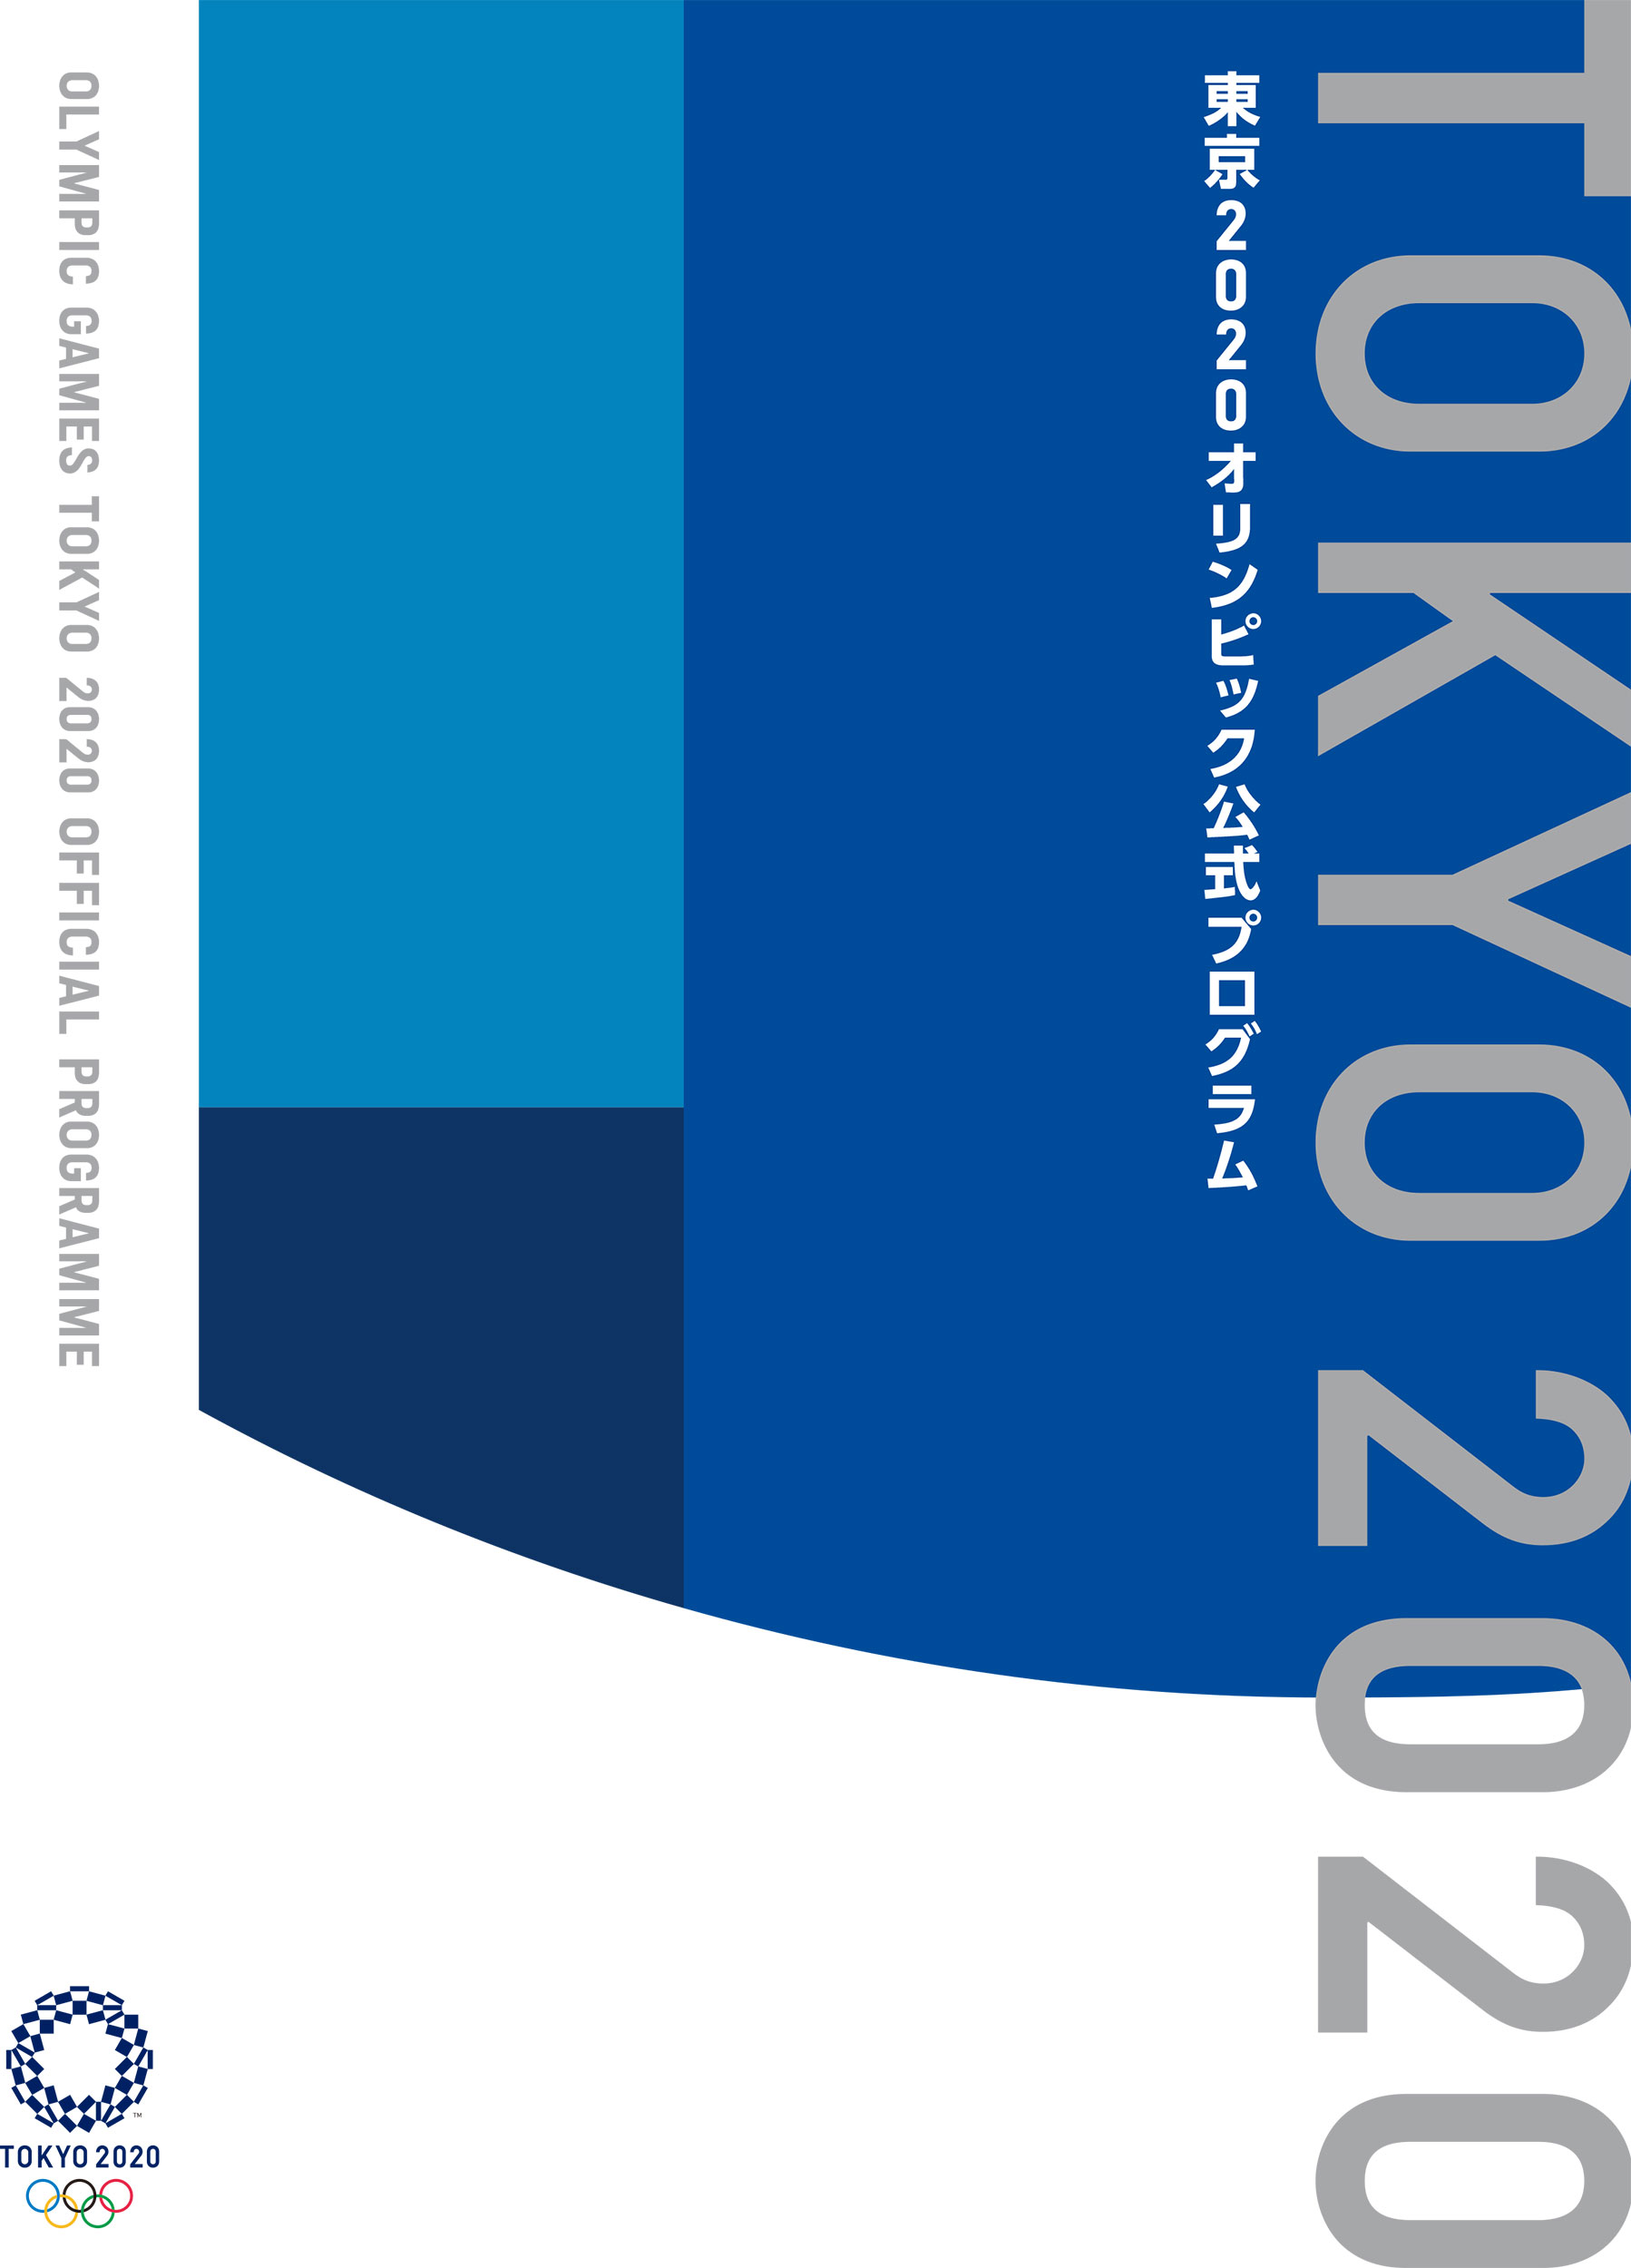 後世に残る、一生に一度の記念本が誕生。東京2020オリンピック唯一の「公式プログラム」のサブ画像1_2021年7月13日（火）発売の『東京2020オリンピック公式プログラム』©Tokyo 2020